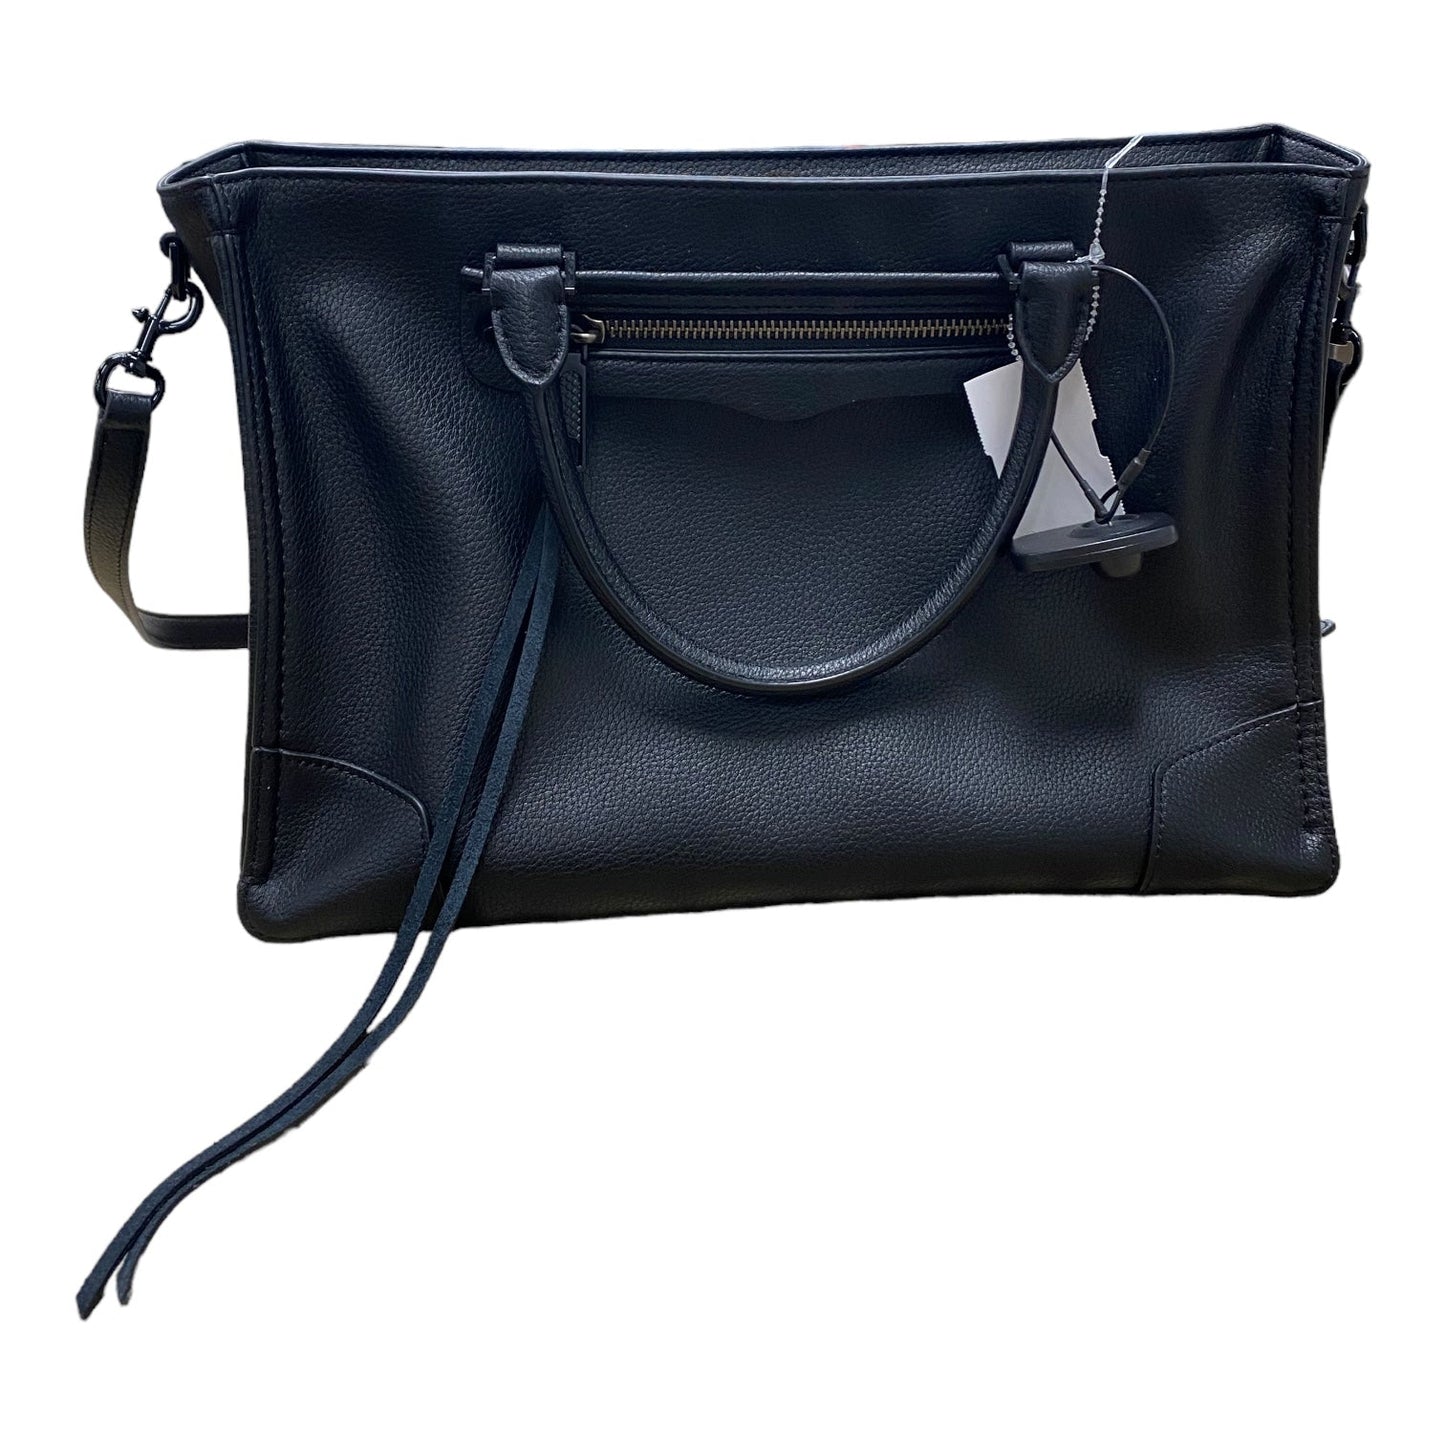 Handbag Designer Rebecca Minkoff, Size Medium